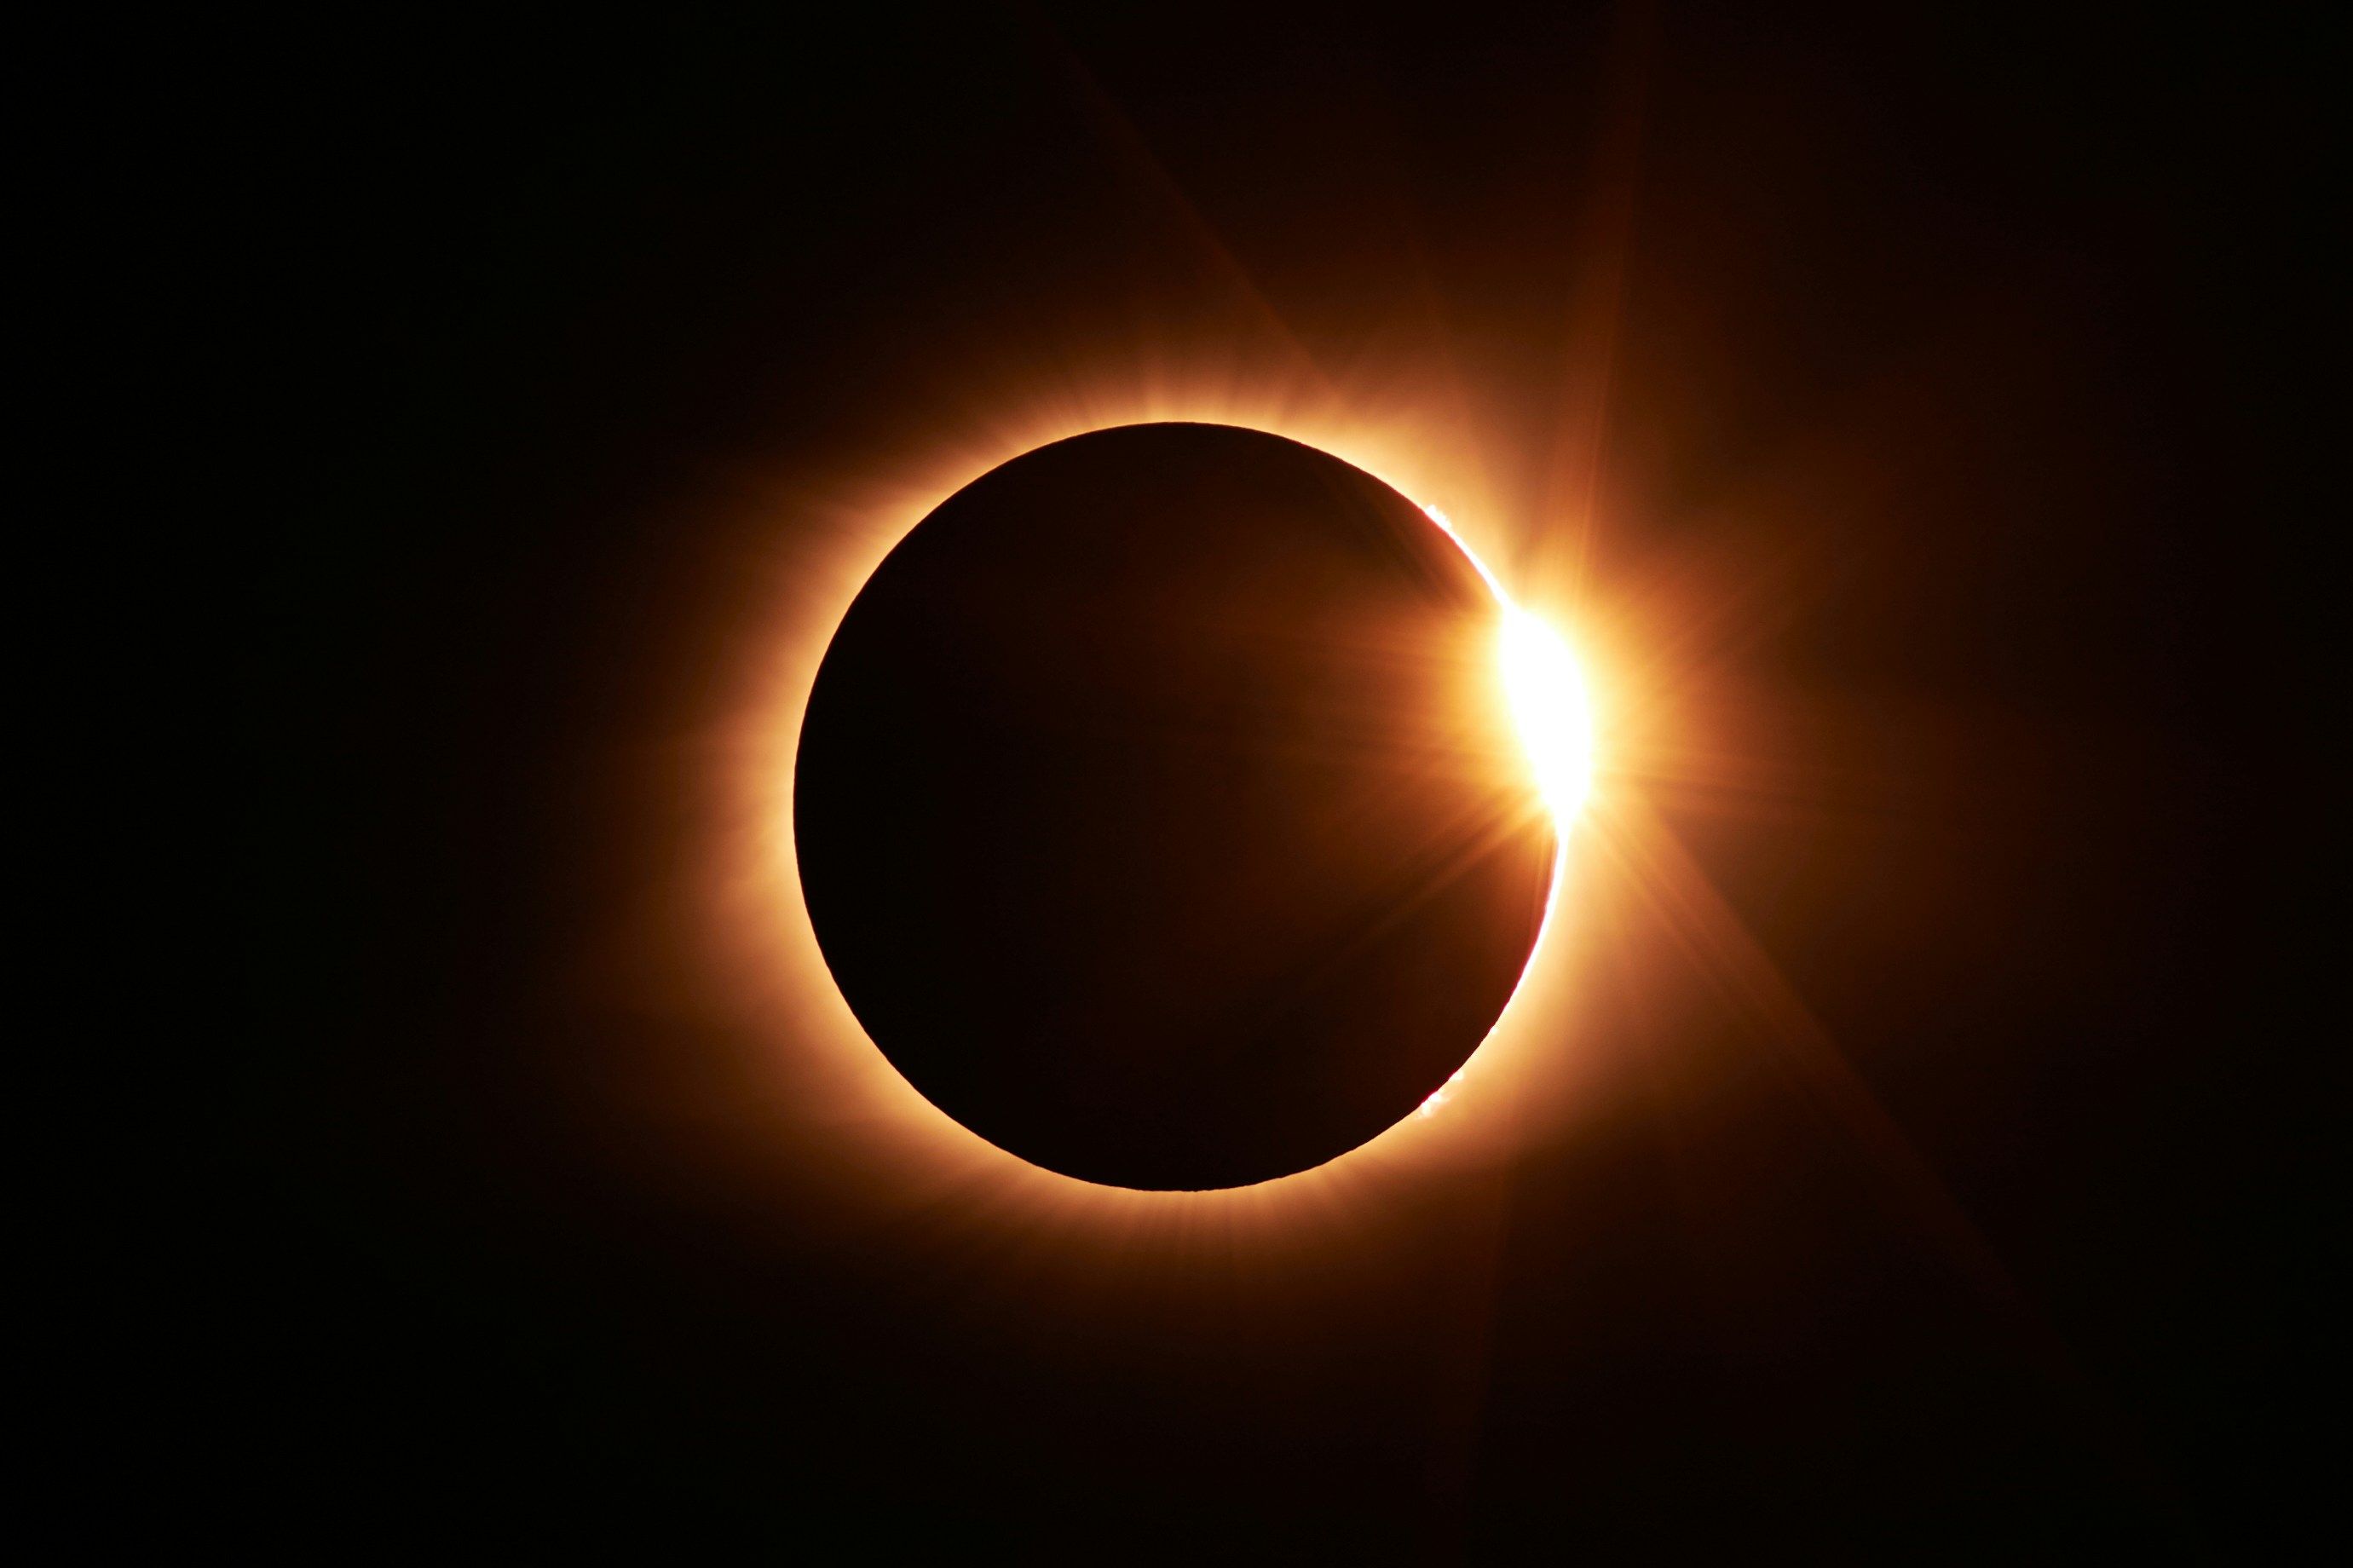 NASA har utfärdat en varning om smartphones och solförmörkelsen